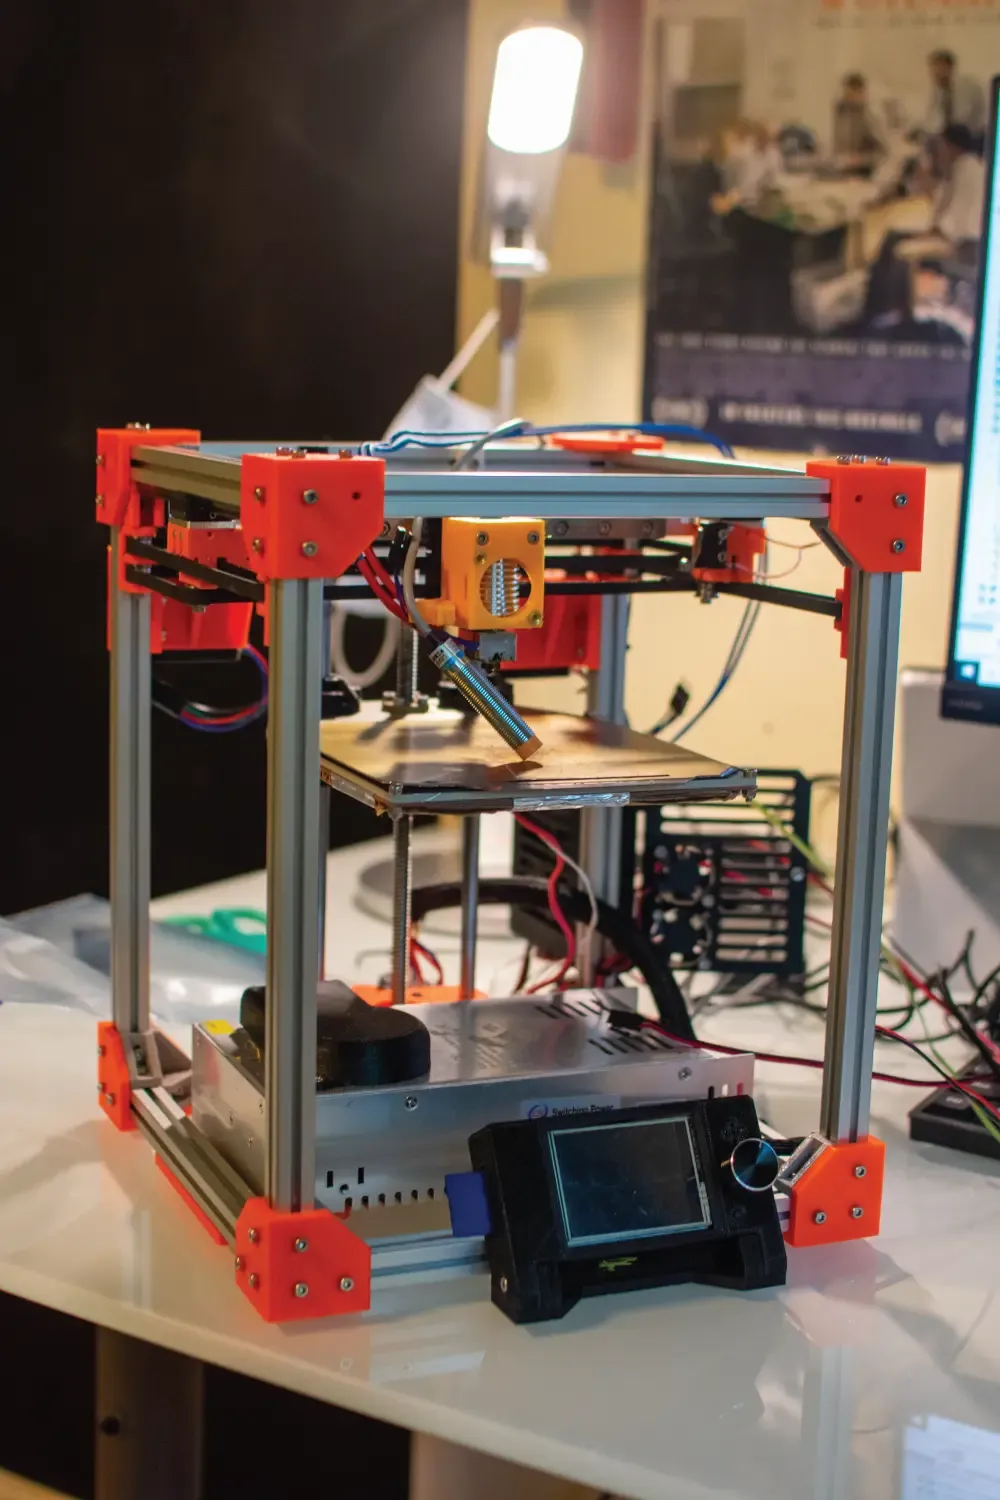 initial version of 3D printer